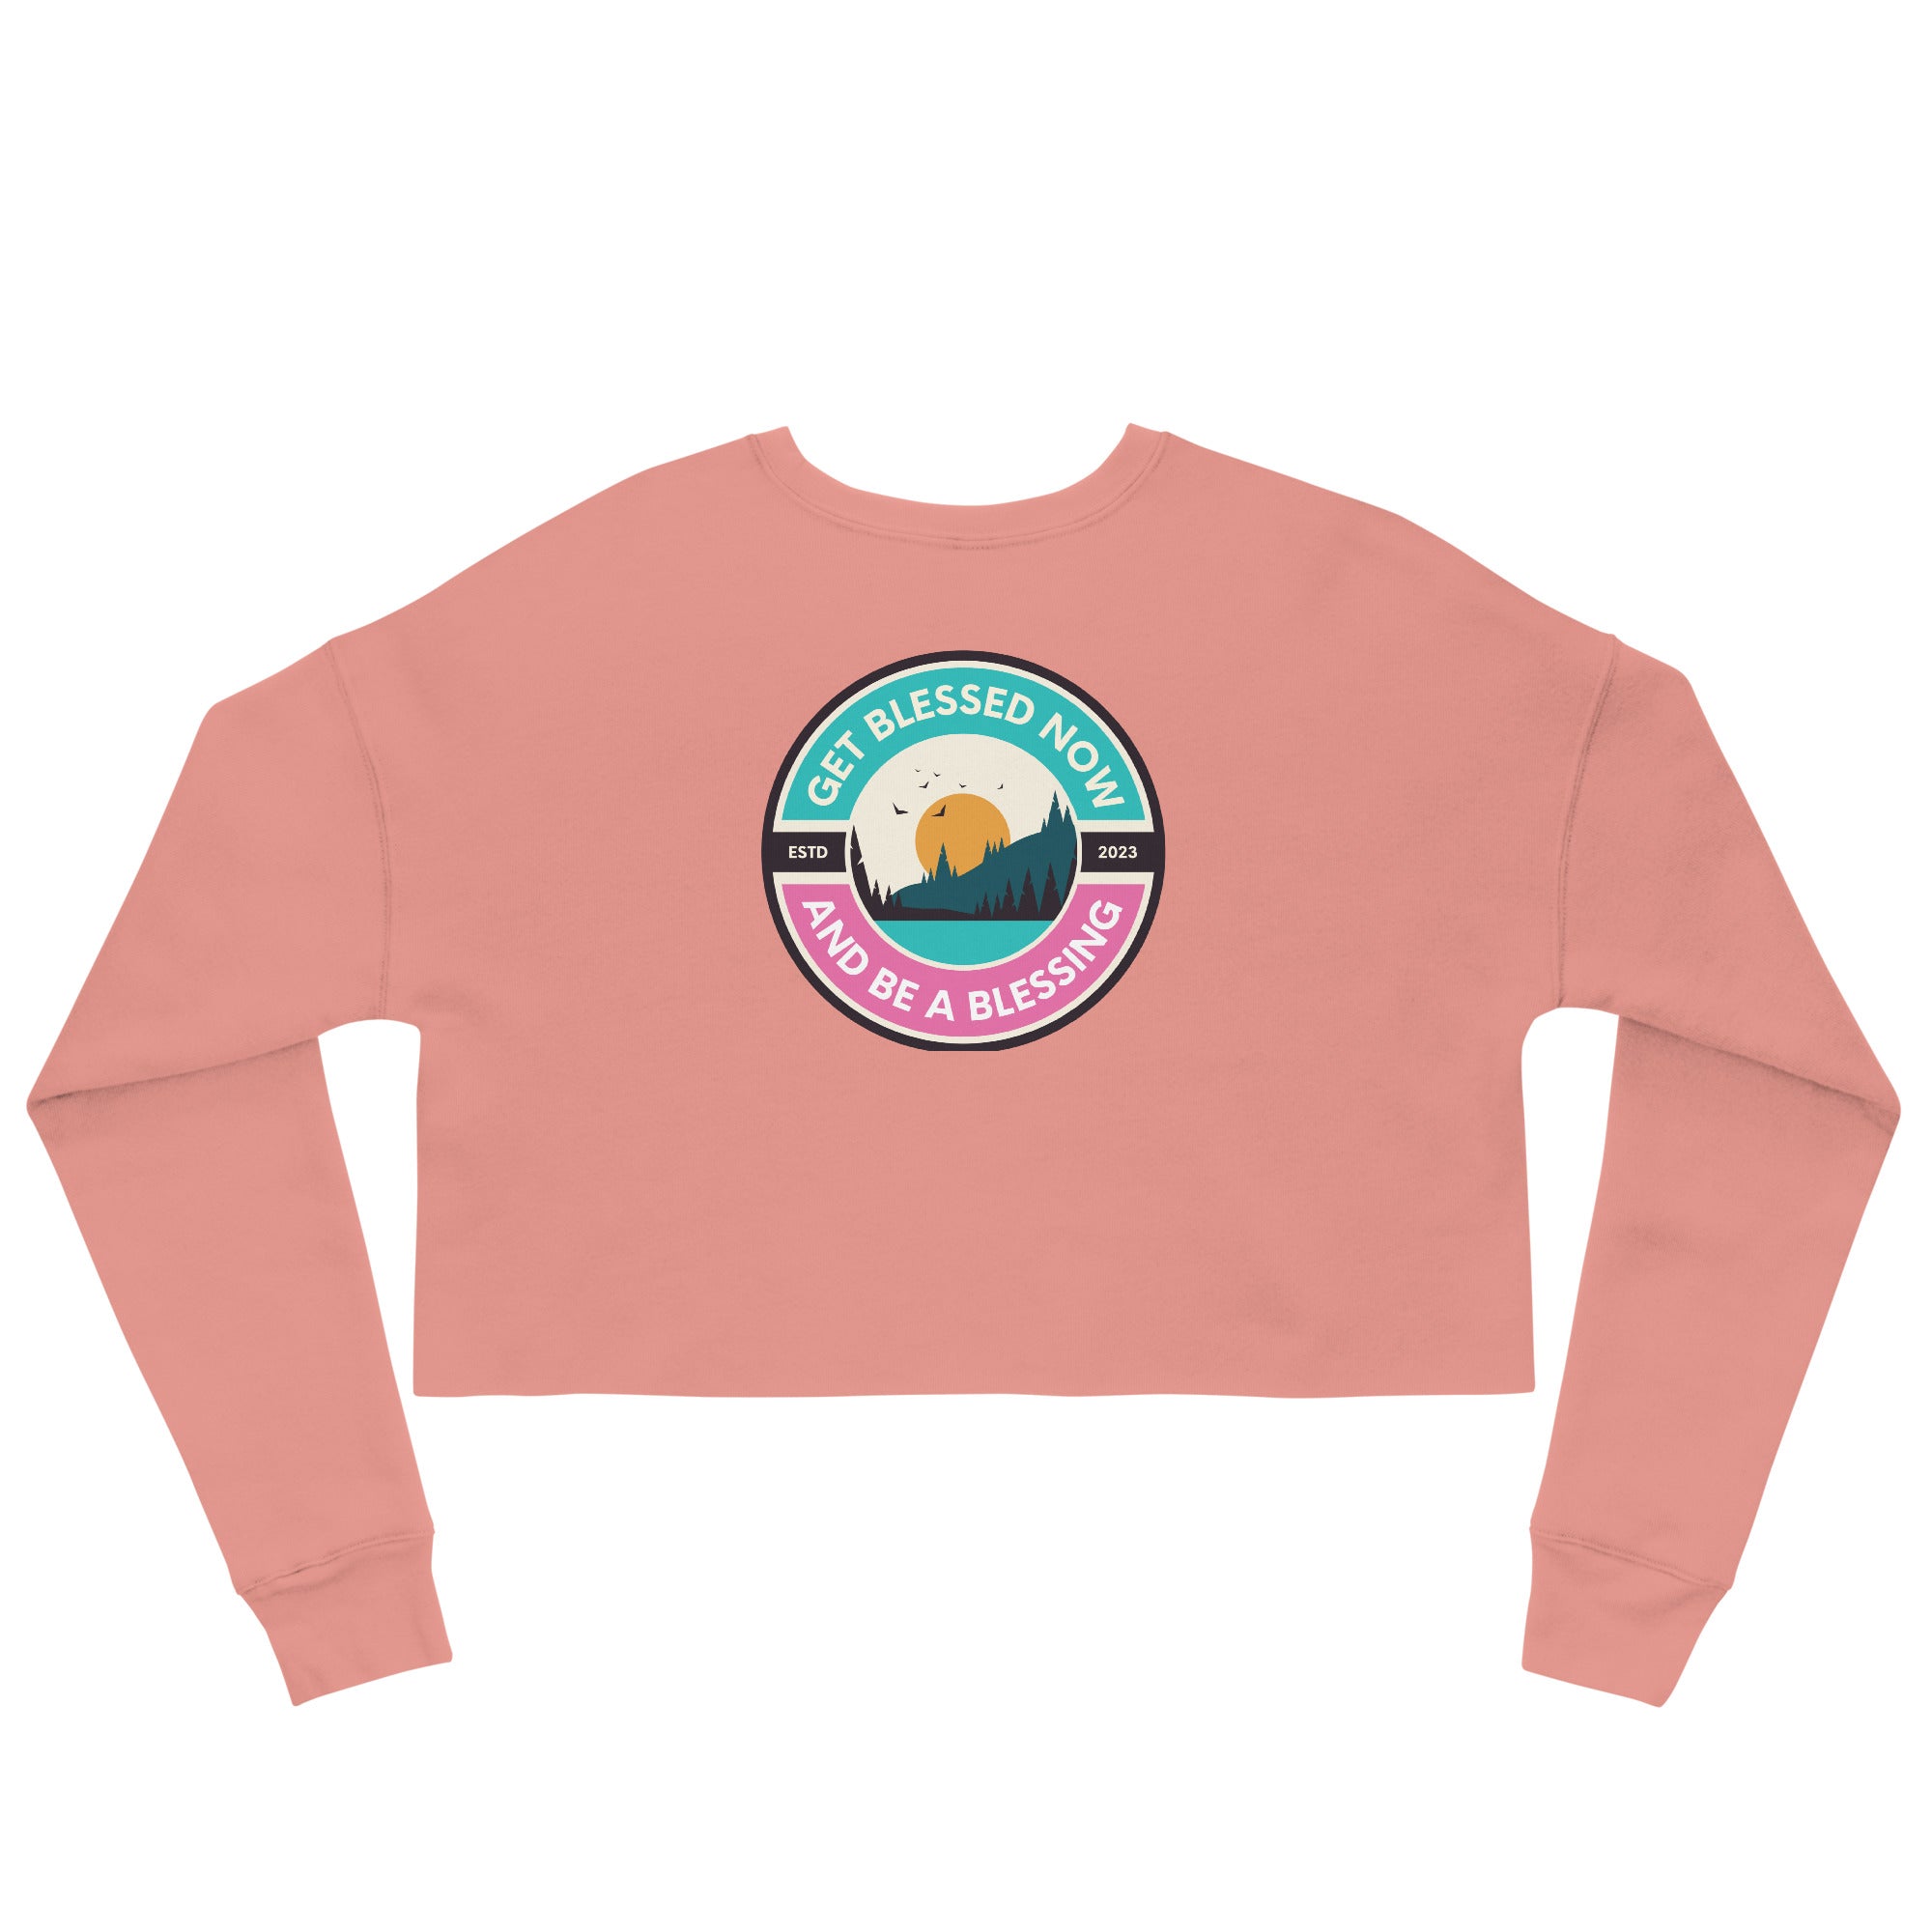 Women's Crop Sweatshirt | GET BLESSED Crop Top | Get Blessed Now